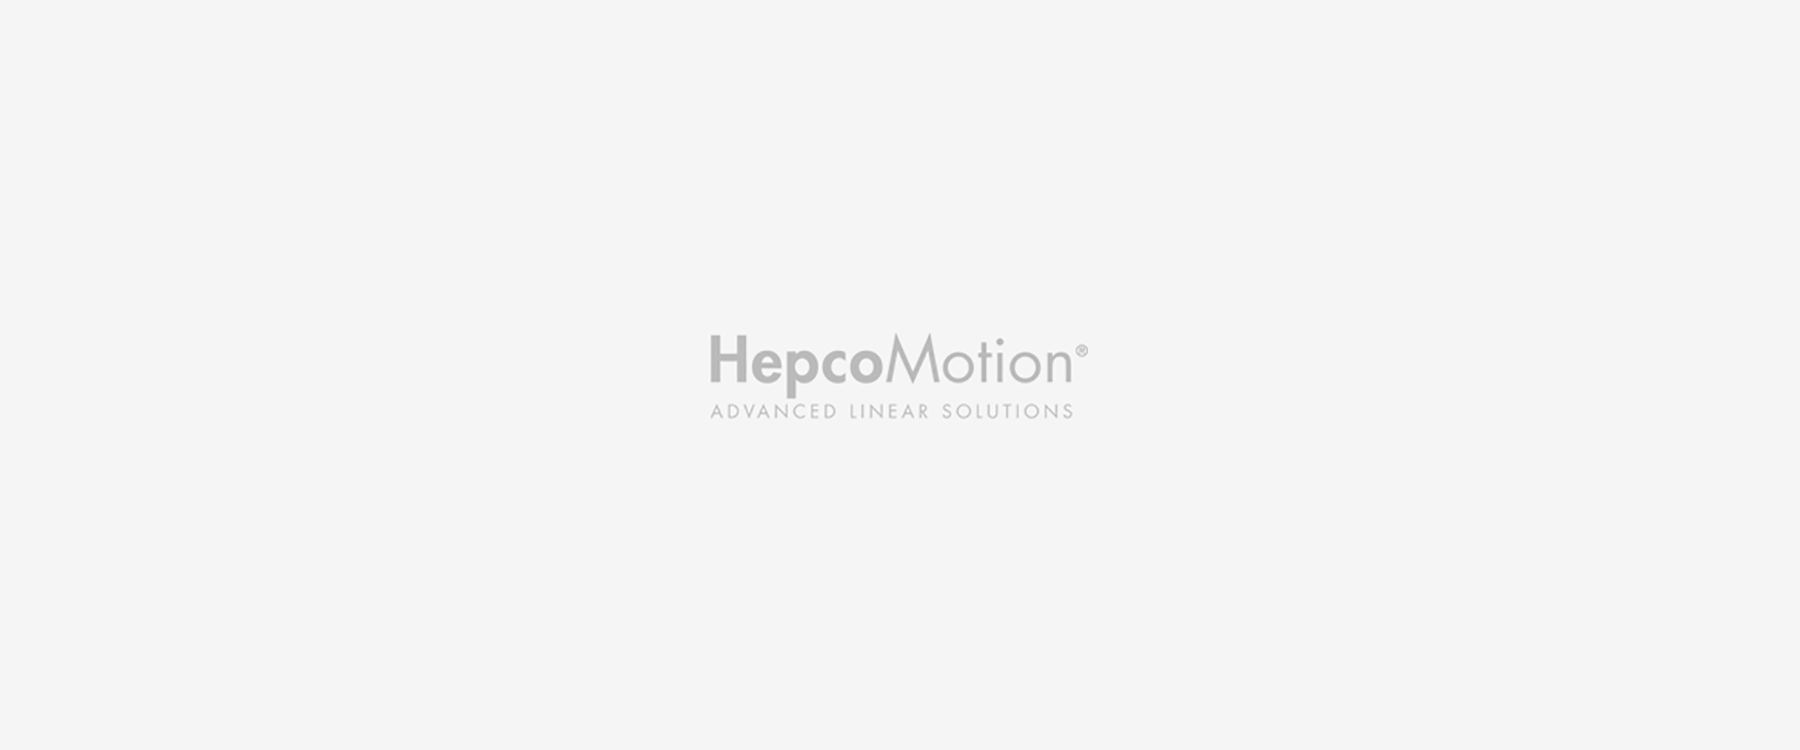 HepcoMotion - Over Hepco